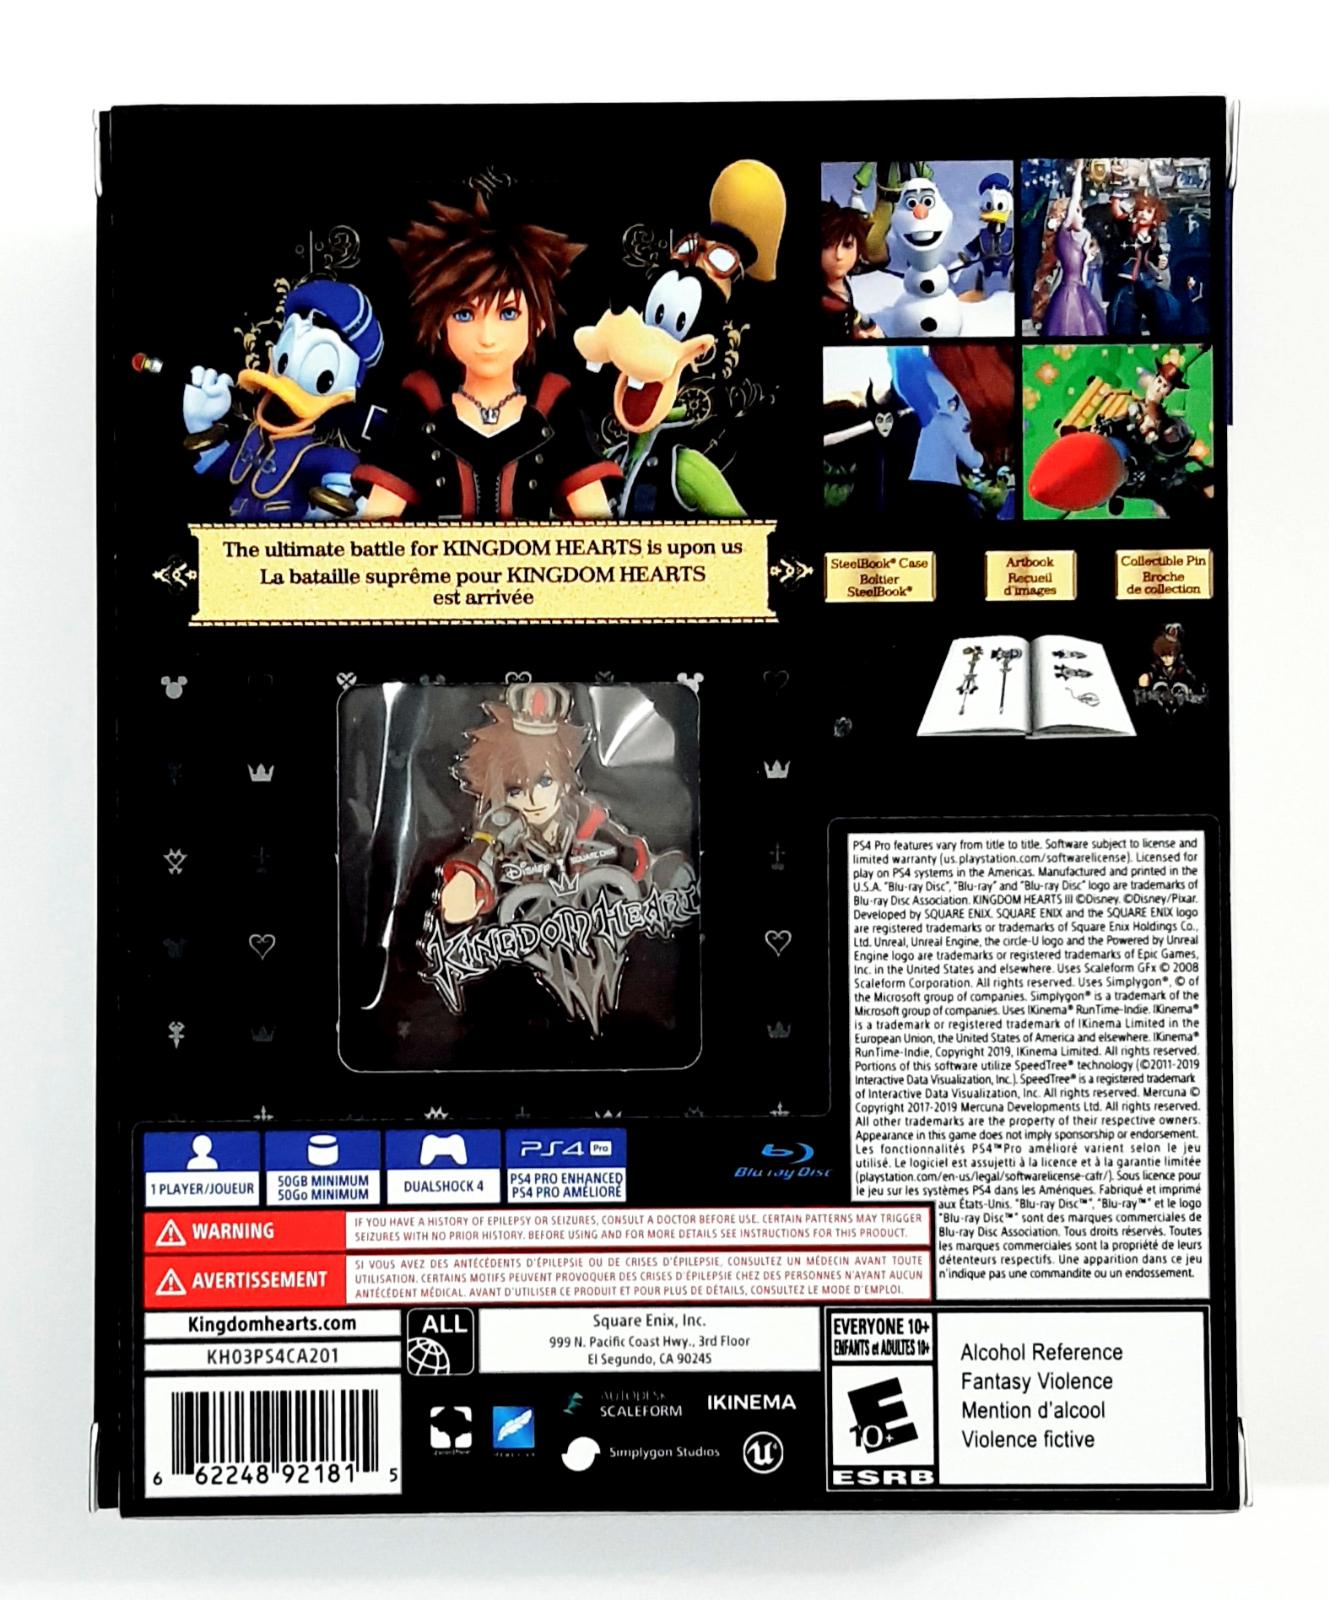 kingdom hearts 3 deluxe digital edition